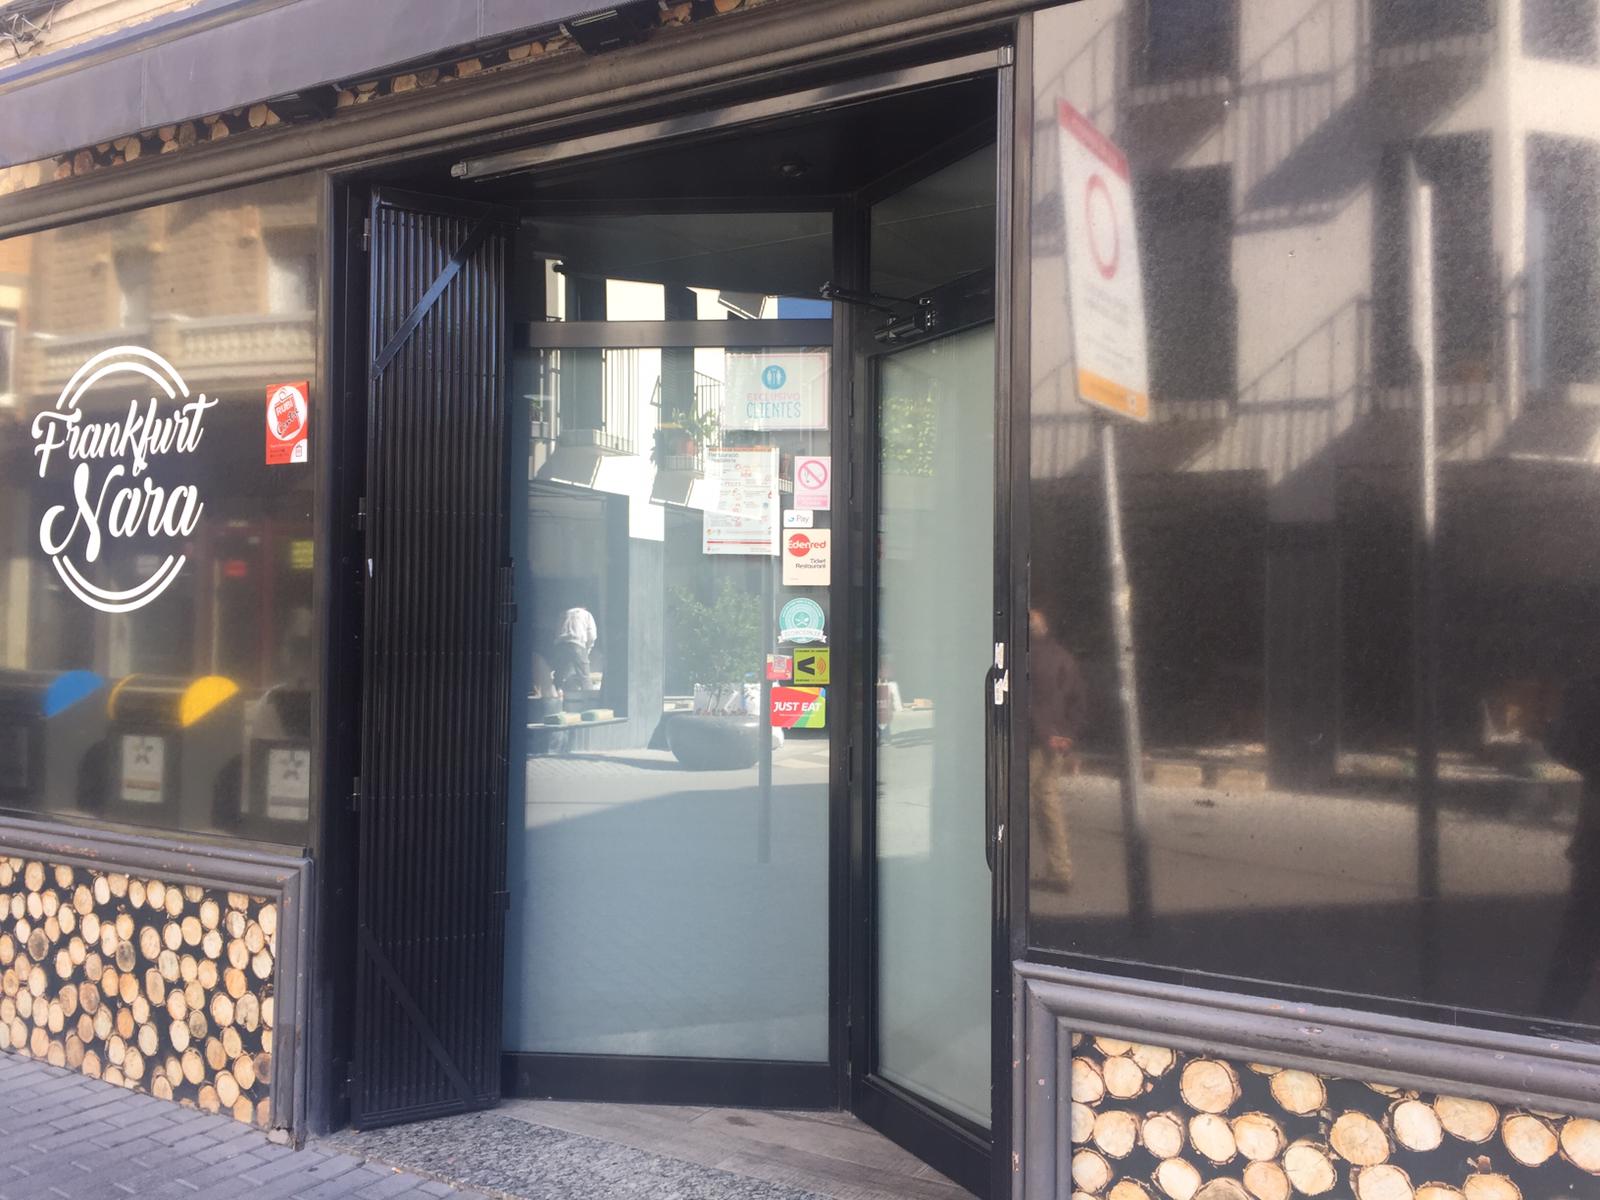 Bars i restaurants tancats després de l'aprovació de les noves restriccions. FOTO: Andrea Martínez